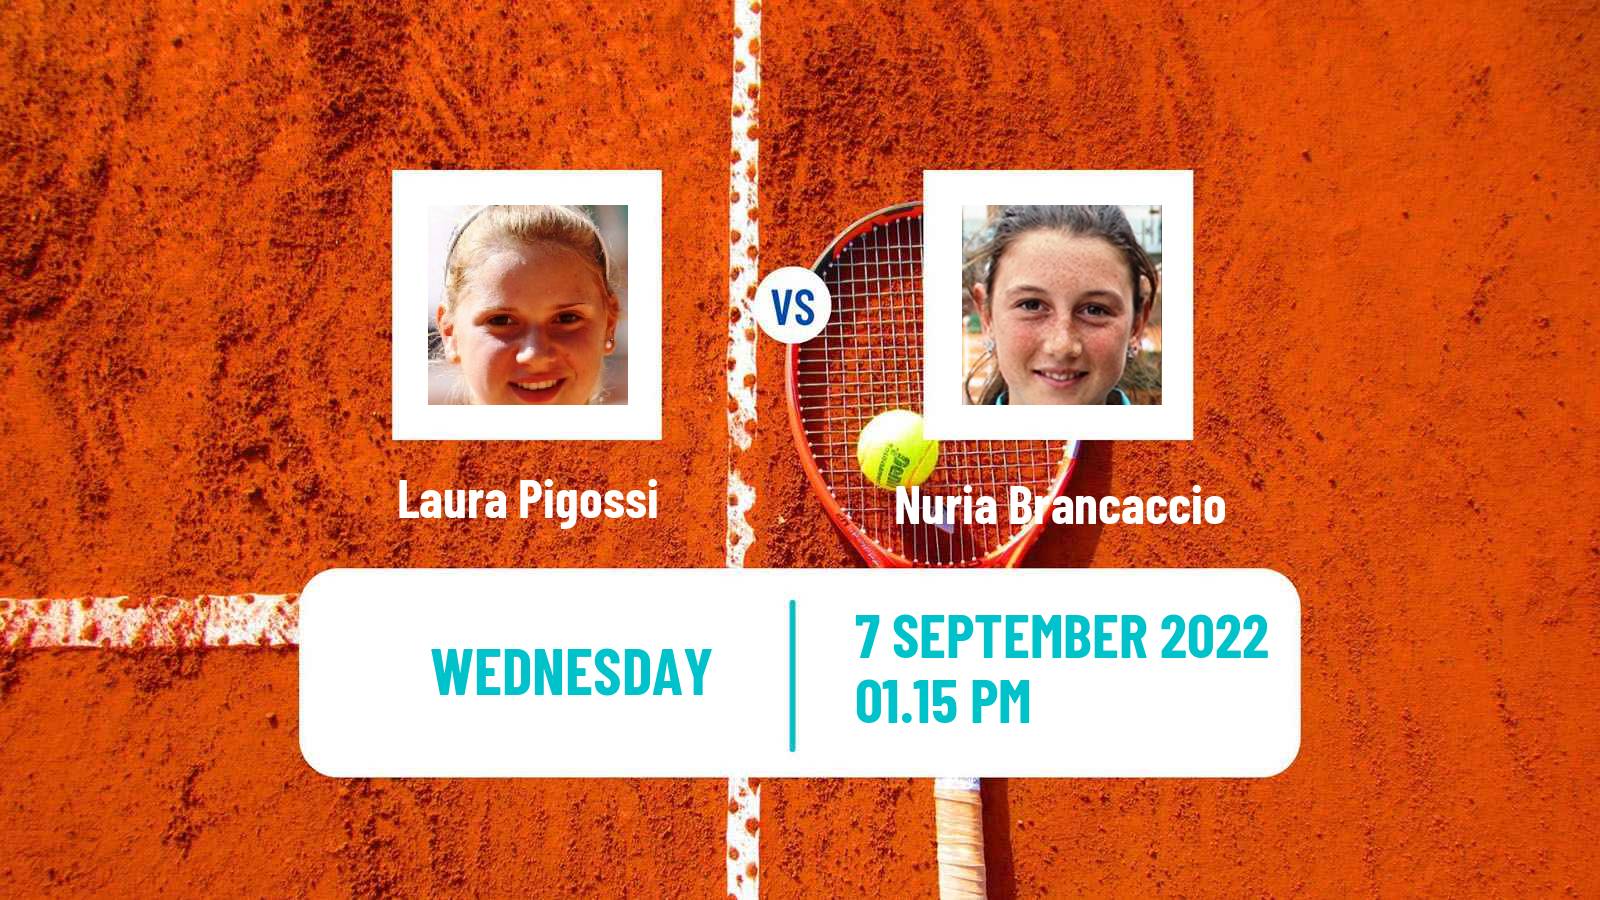 Tennis ATP Challenger Laura Pigossi - Nuria Brancaccio